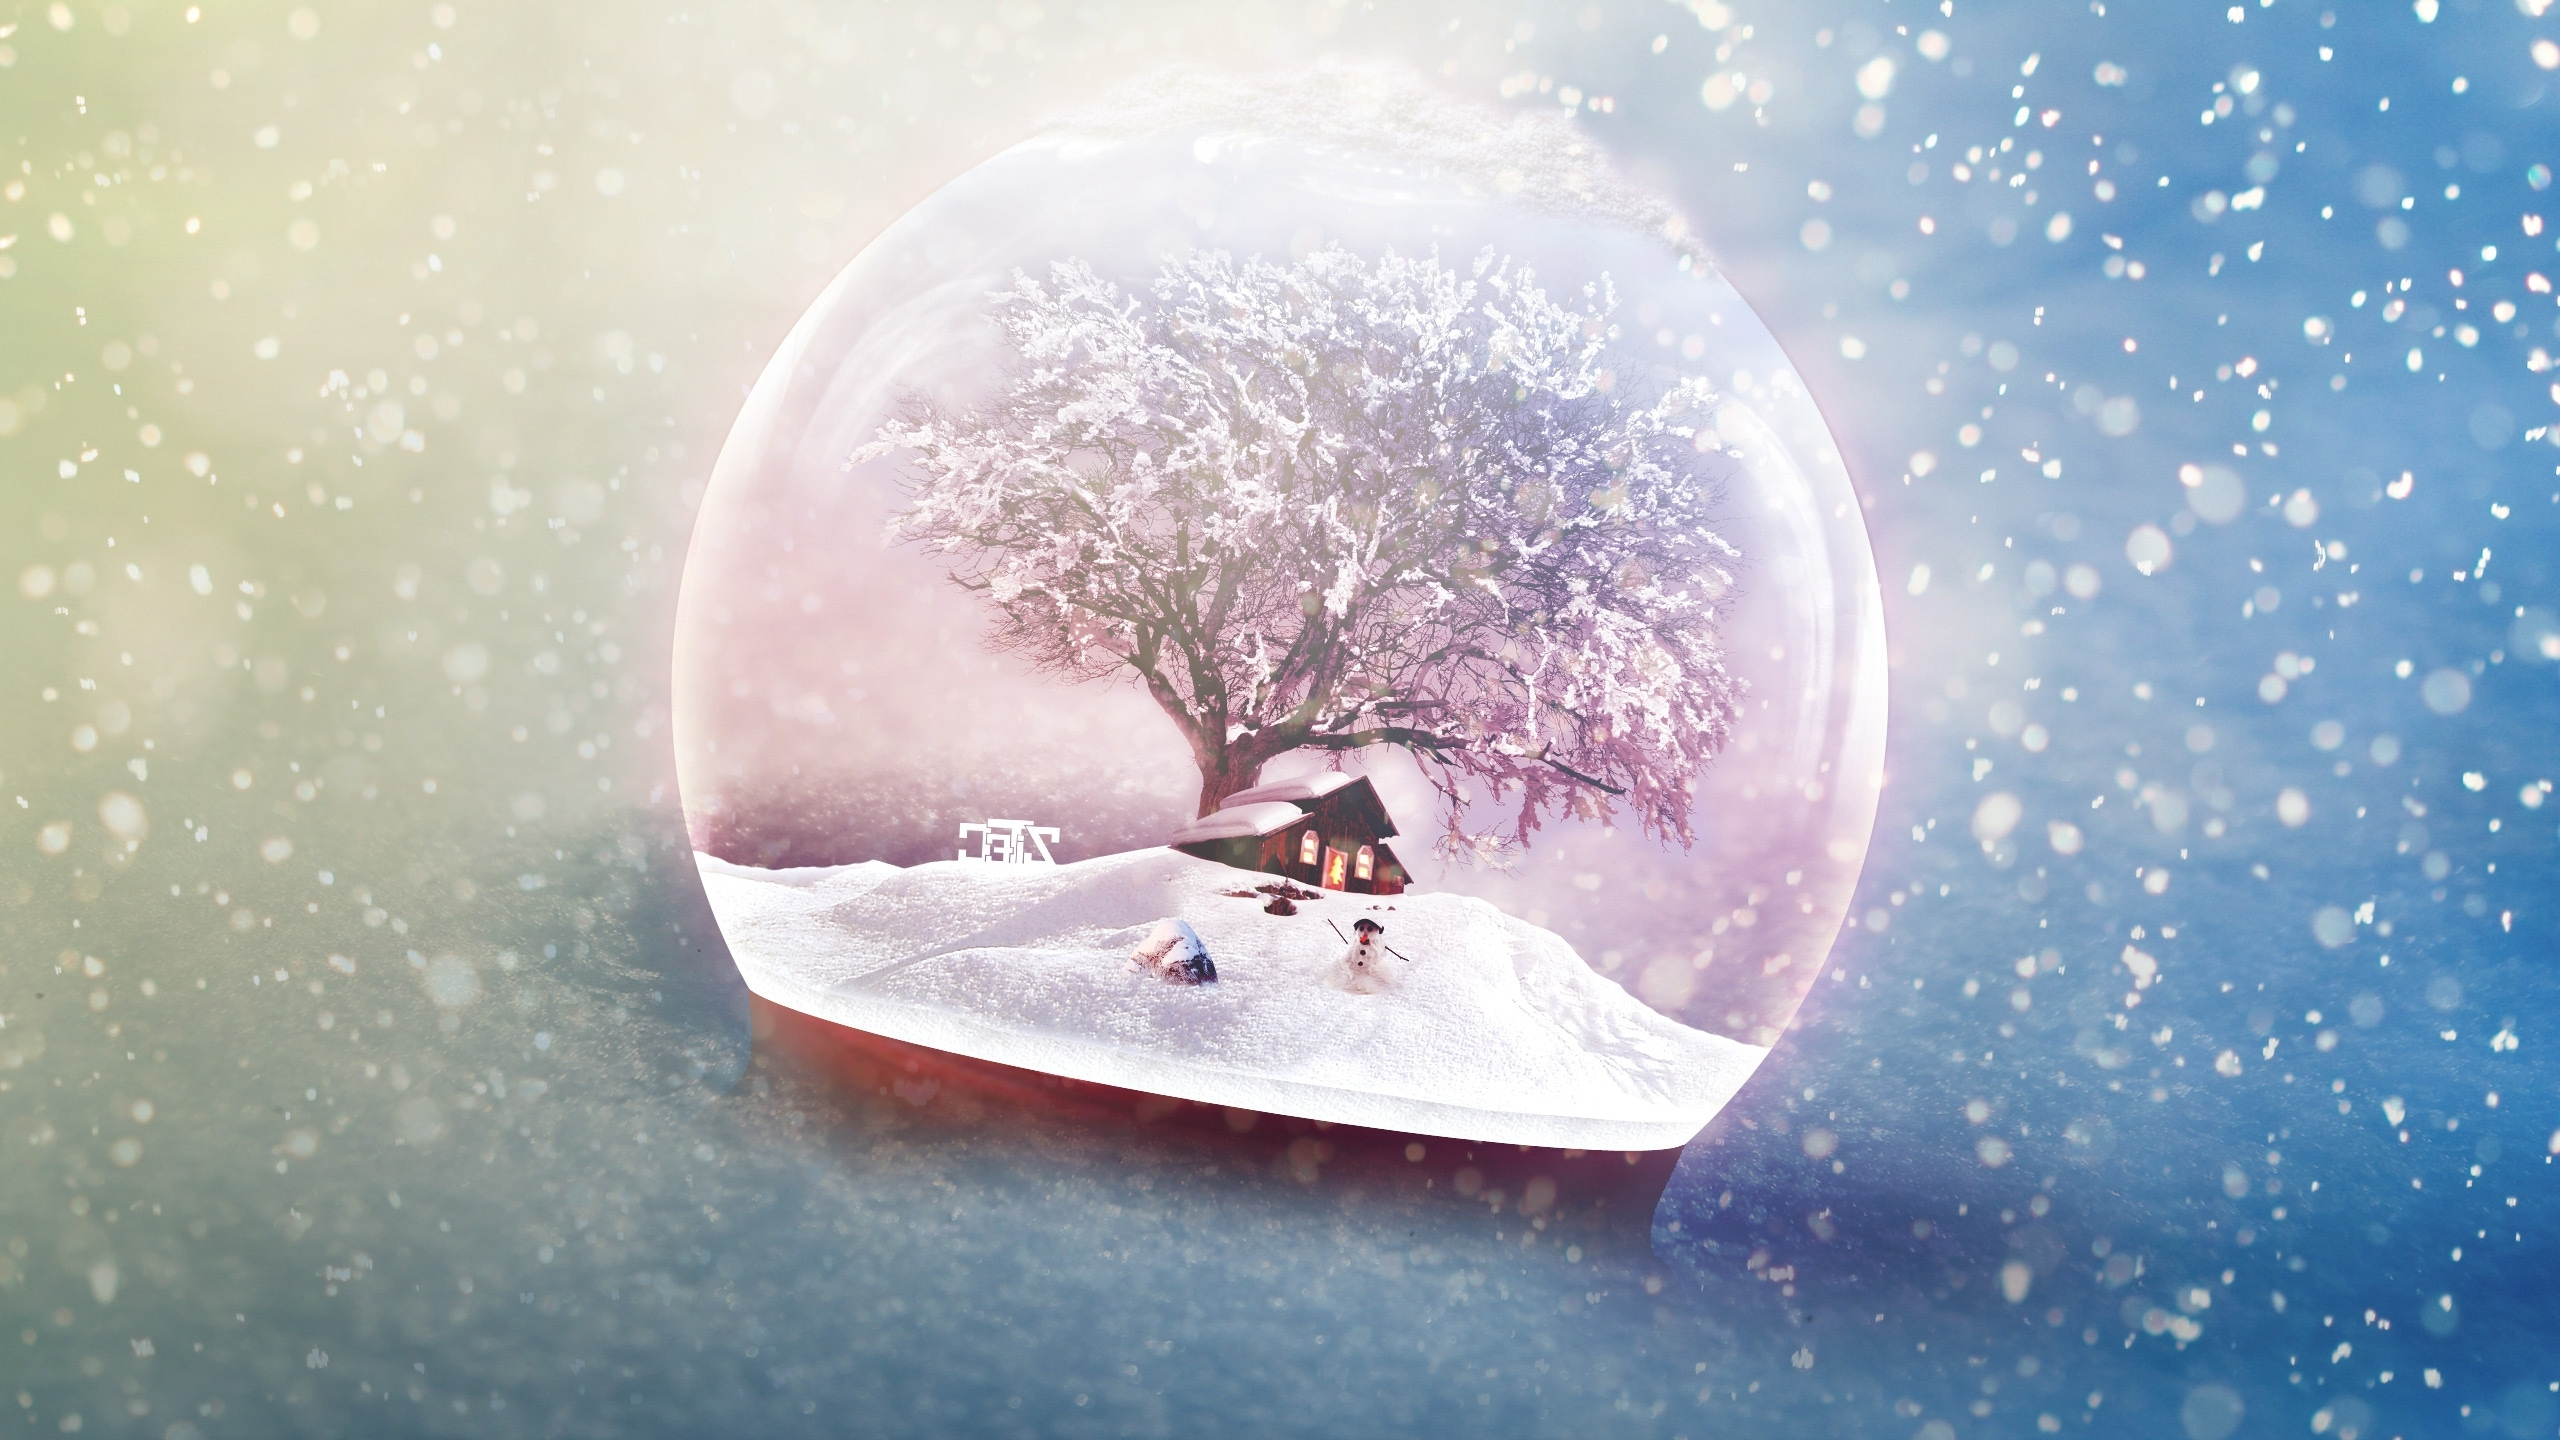 2560x1440 Wallpaper Tree, Snow Globe Resolution: Wallpx